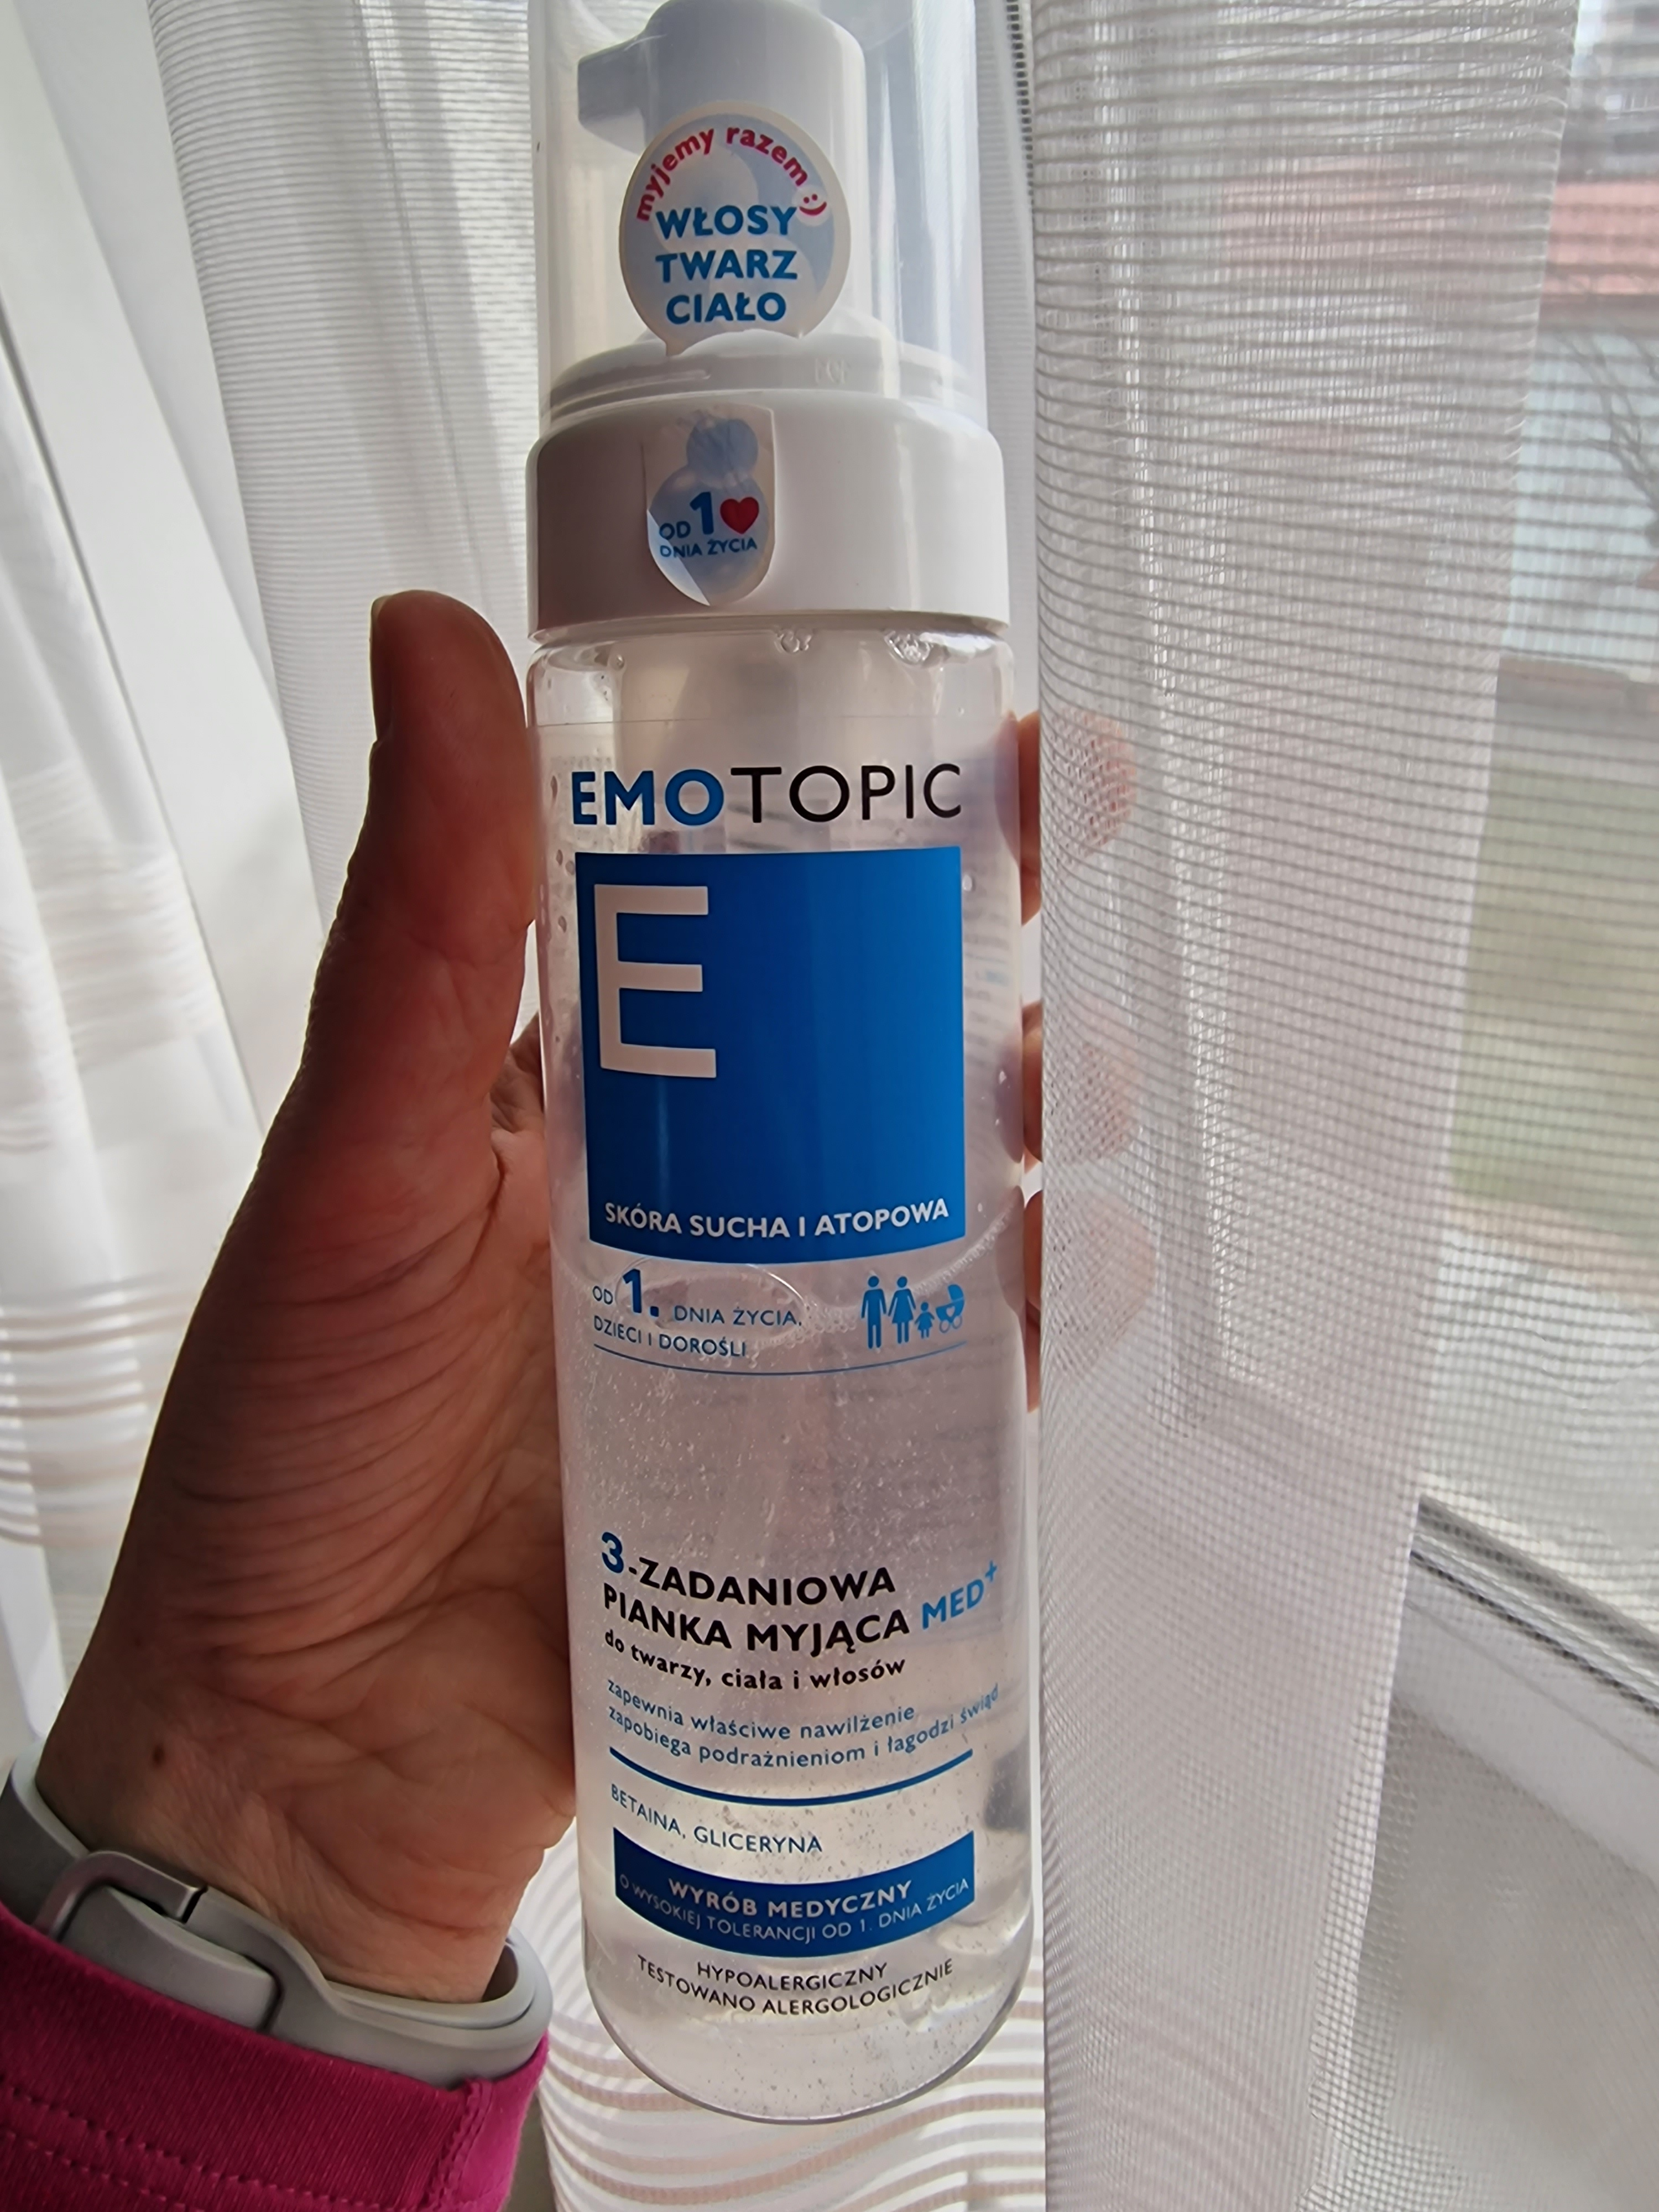 3-цільова очищуюча пінка  Emotopic від польського бренду Pharmaceris